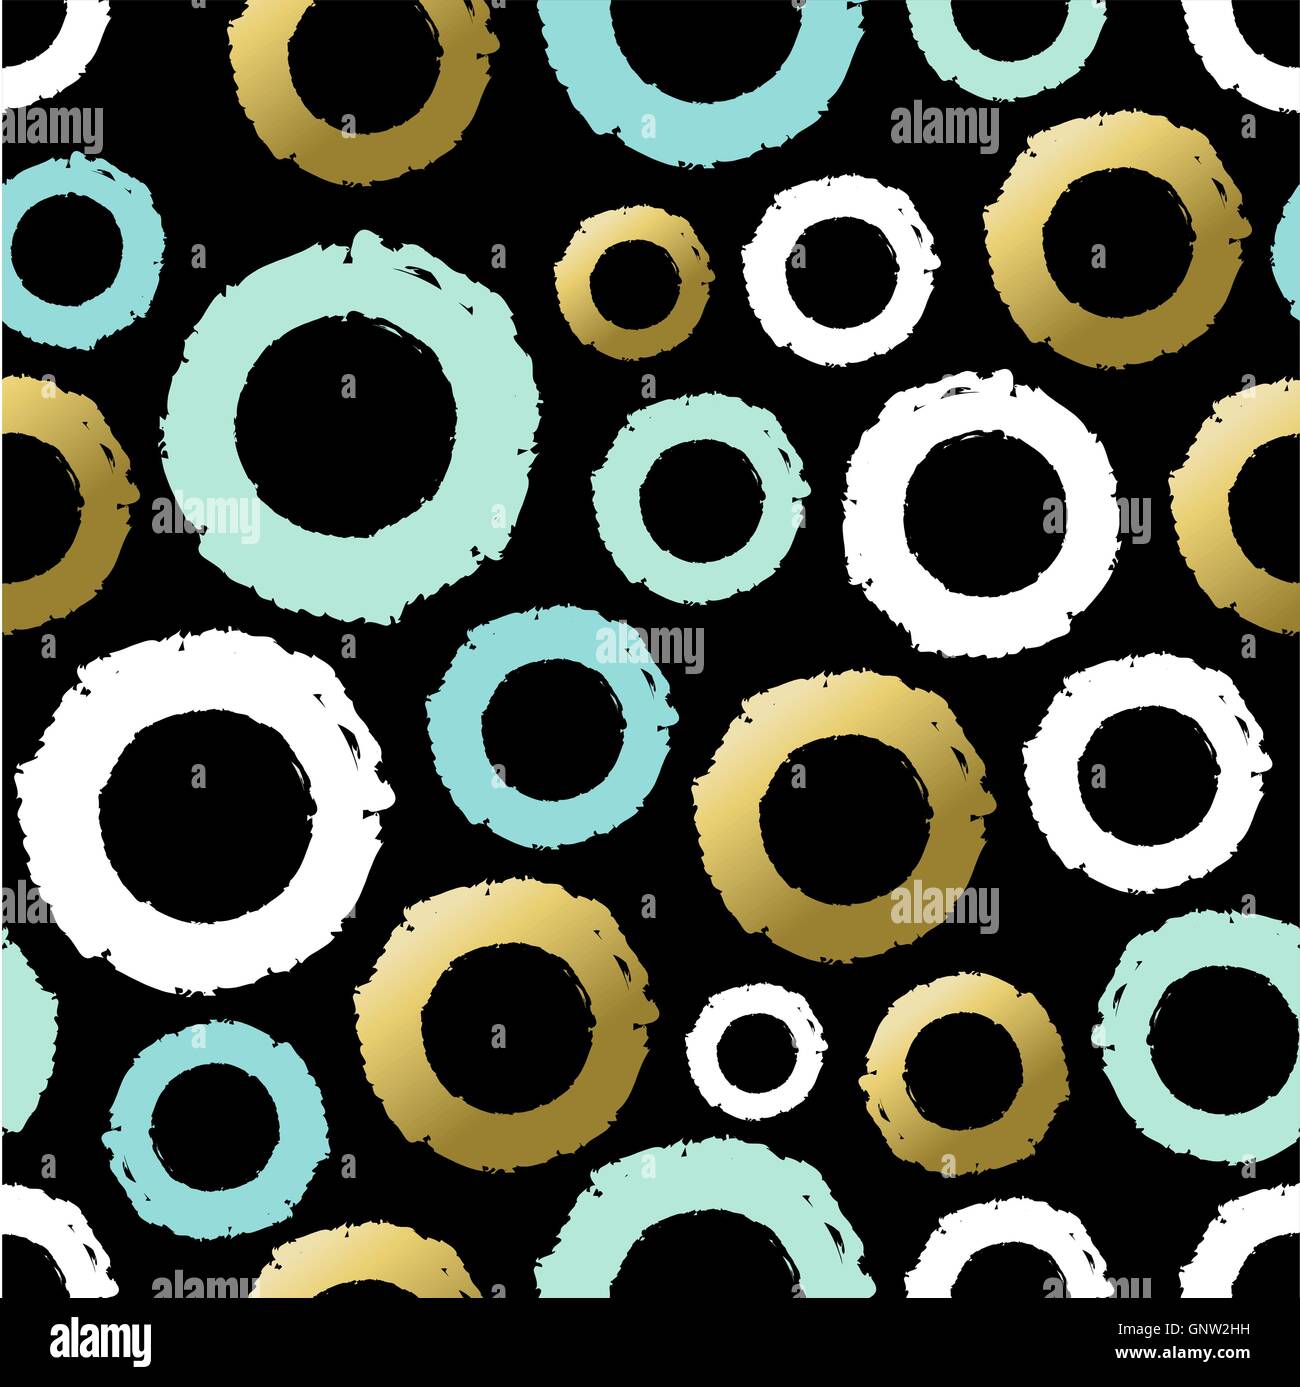 Modèle transparent avec anneaux en or cercle grunge de couleurs, style de peinture main arrière-plan. Vecteur EPS10. Illustration de Vecteur